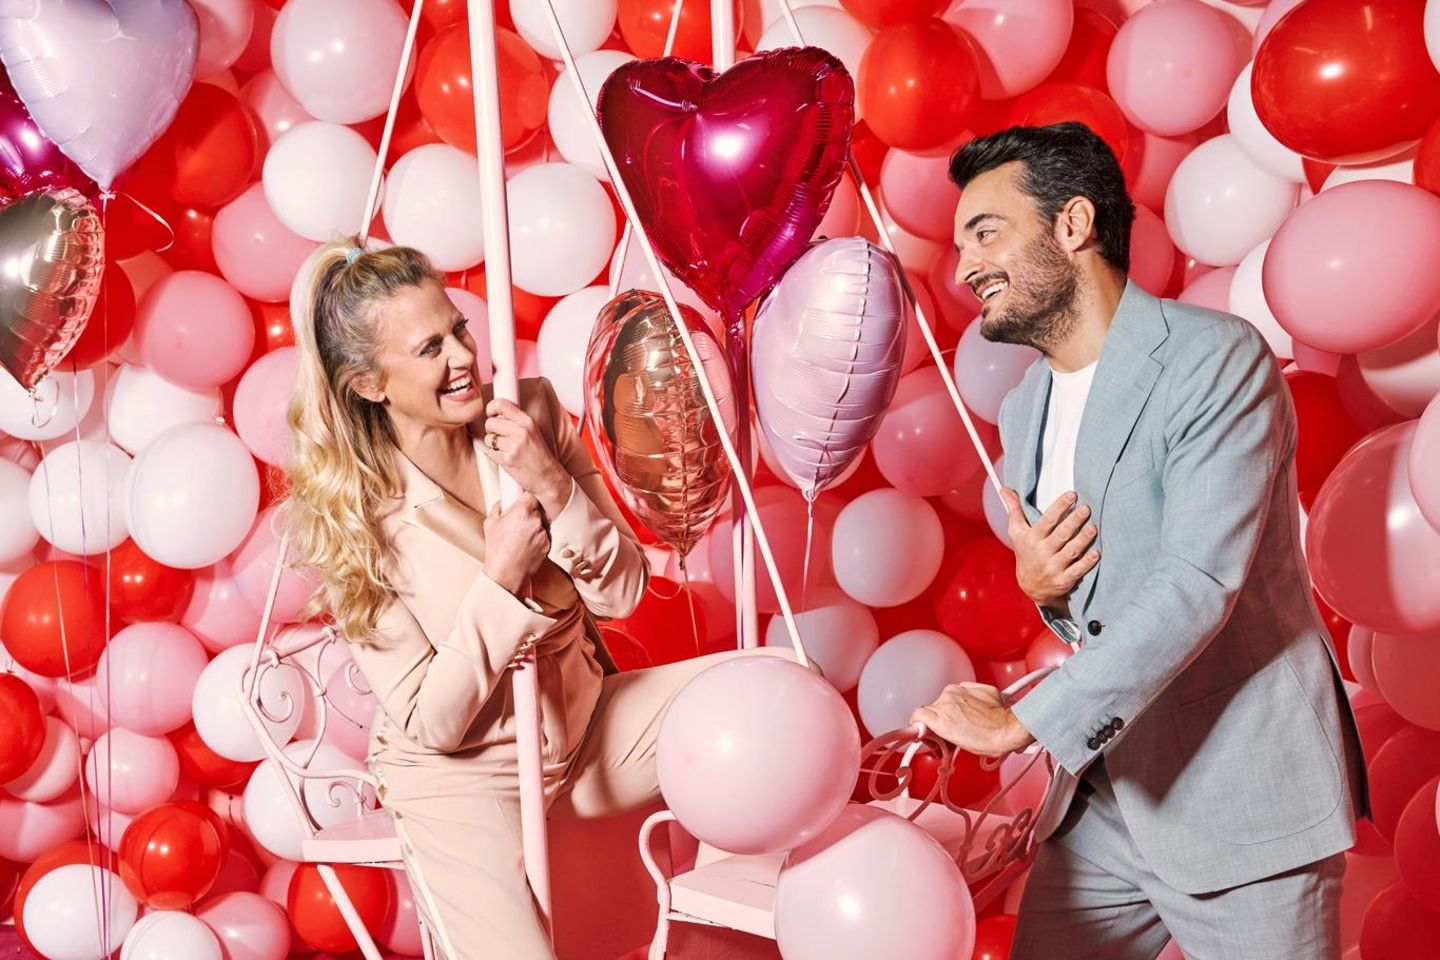 Giovanni Zarella: Barbara und Giovanni umgeben von roten und pinken Luftballons